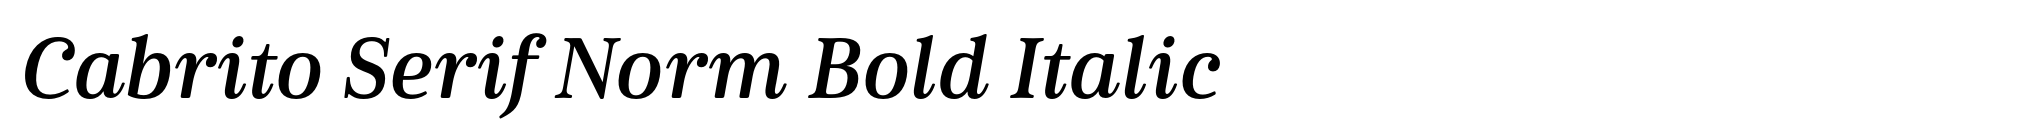 Cabrito Serif Norm Bold Italic image